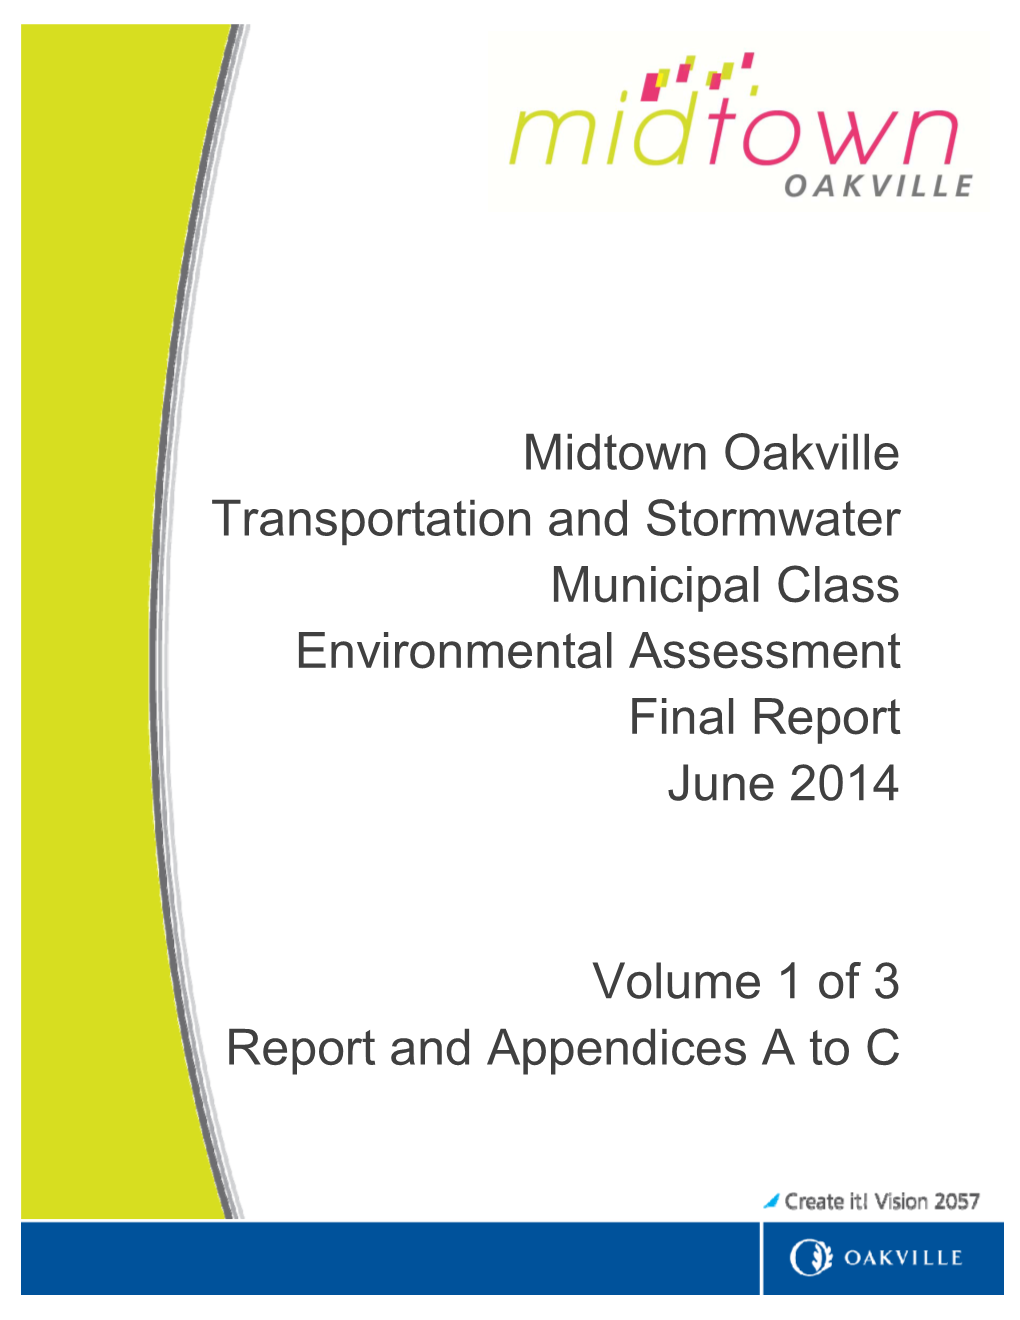 Midtown Oakville Transportation and Stormwater Municipal Class Environmental Assessment Final Report June 2014